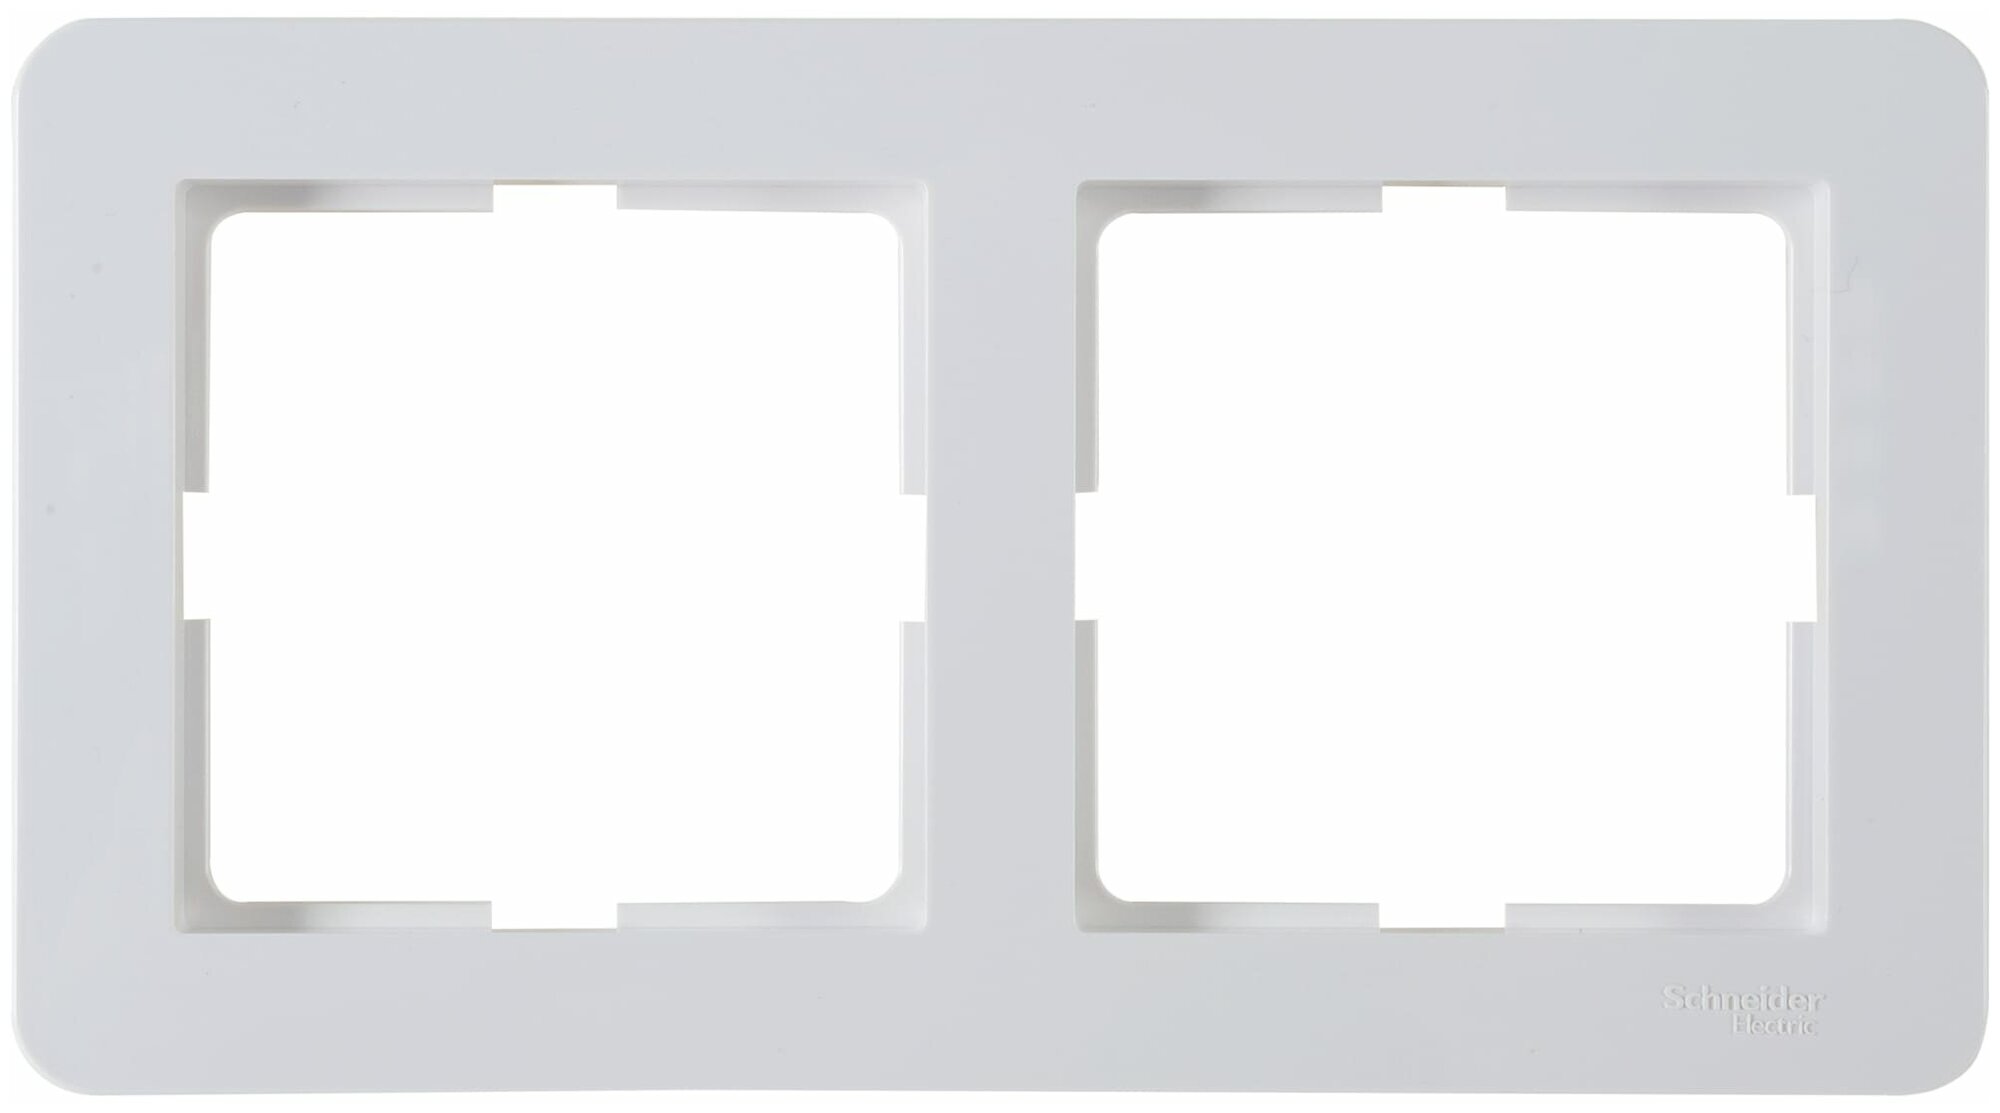 Рамка для розеток и выключателей Schneider Electric W59 Deco 2 поста цвет белый. Набор из 3 шт.